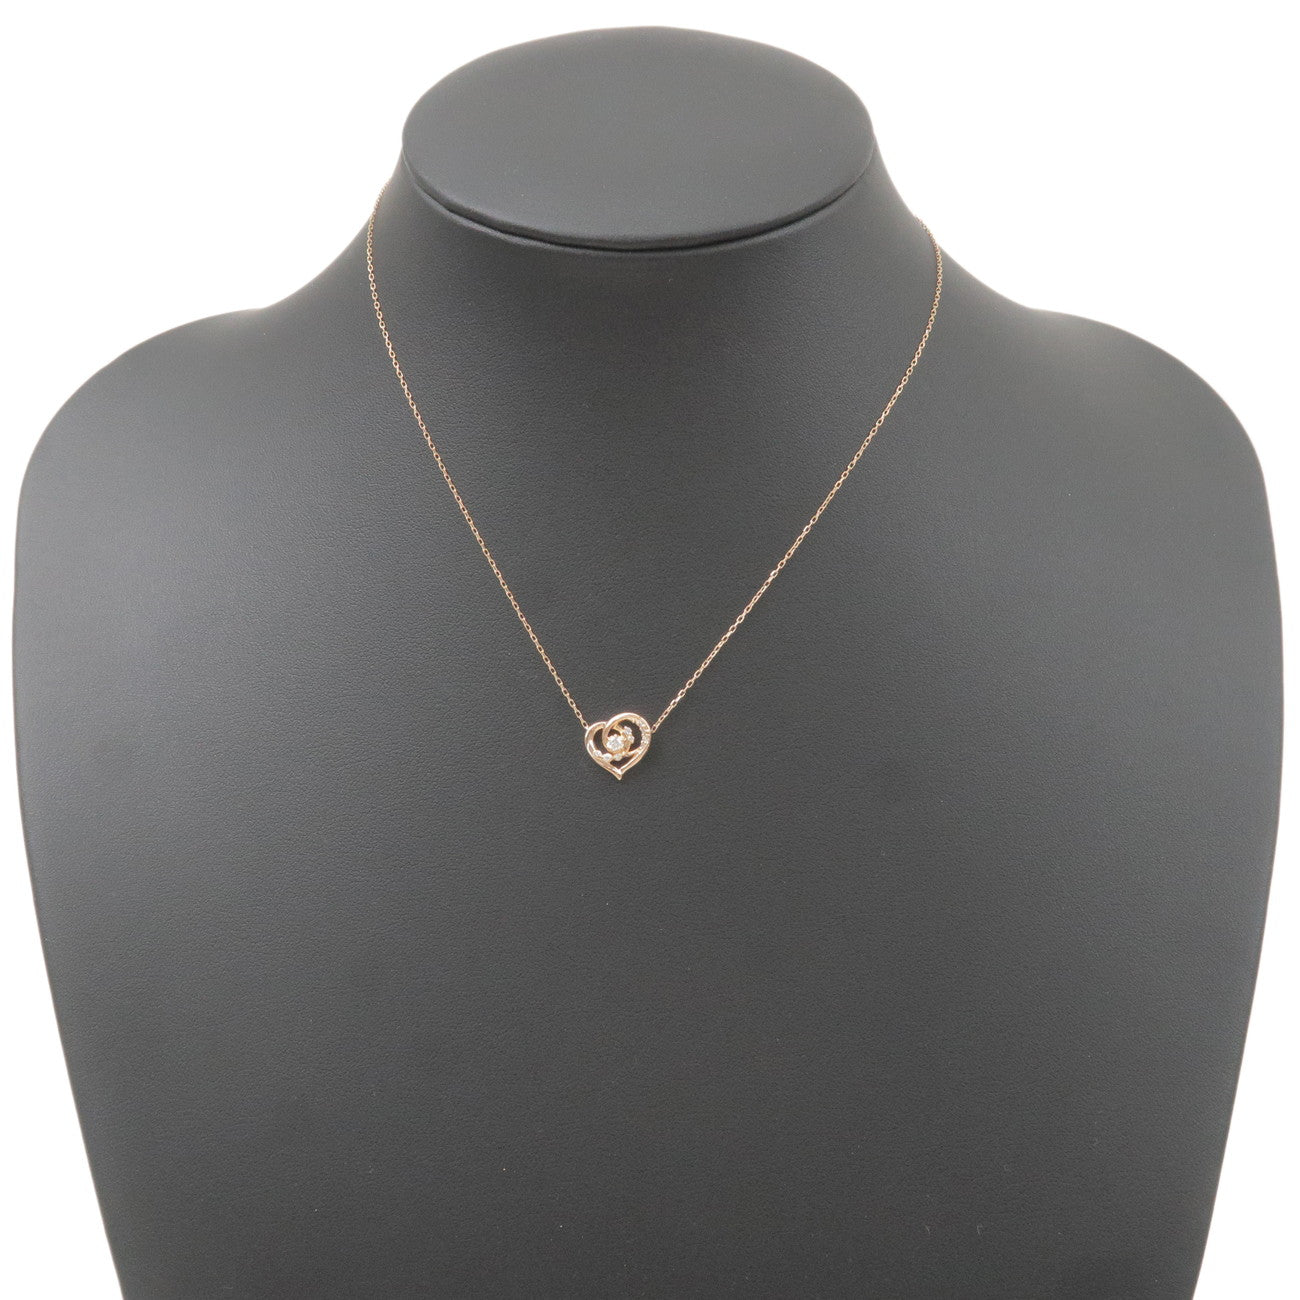 4C Heart Diamond Necklace K18PG 750PG Rose Gold